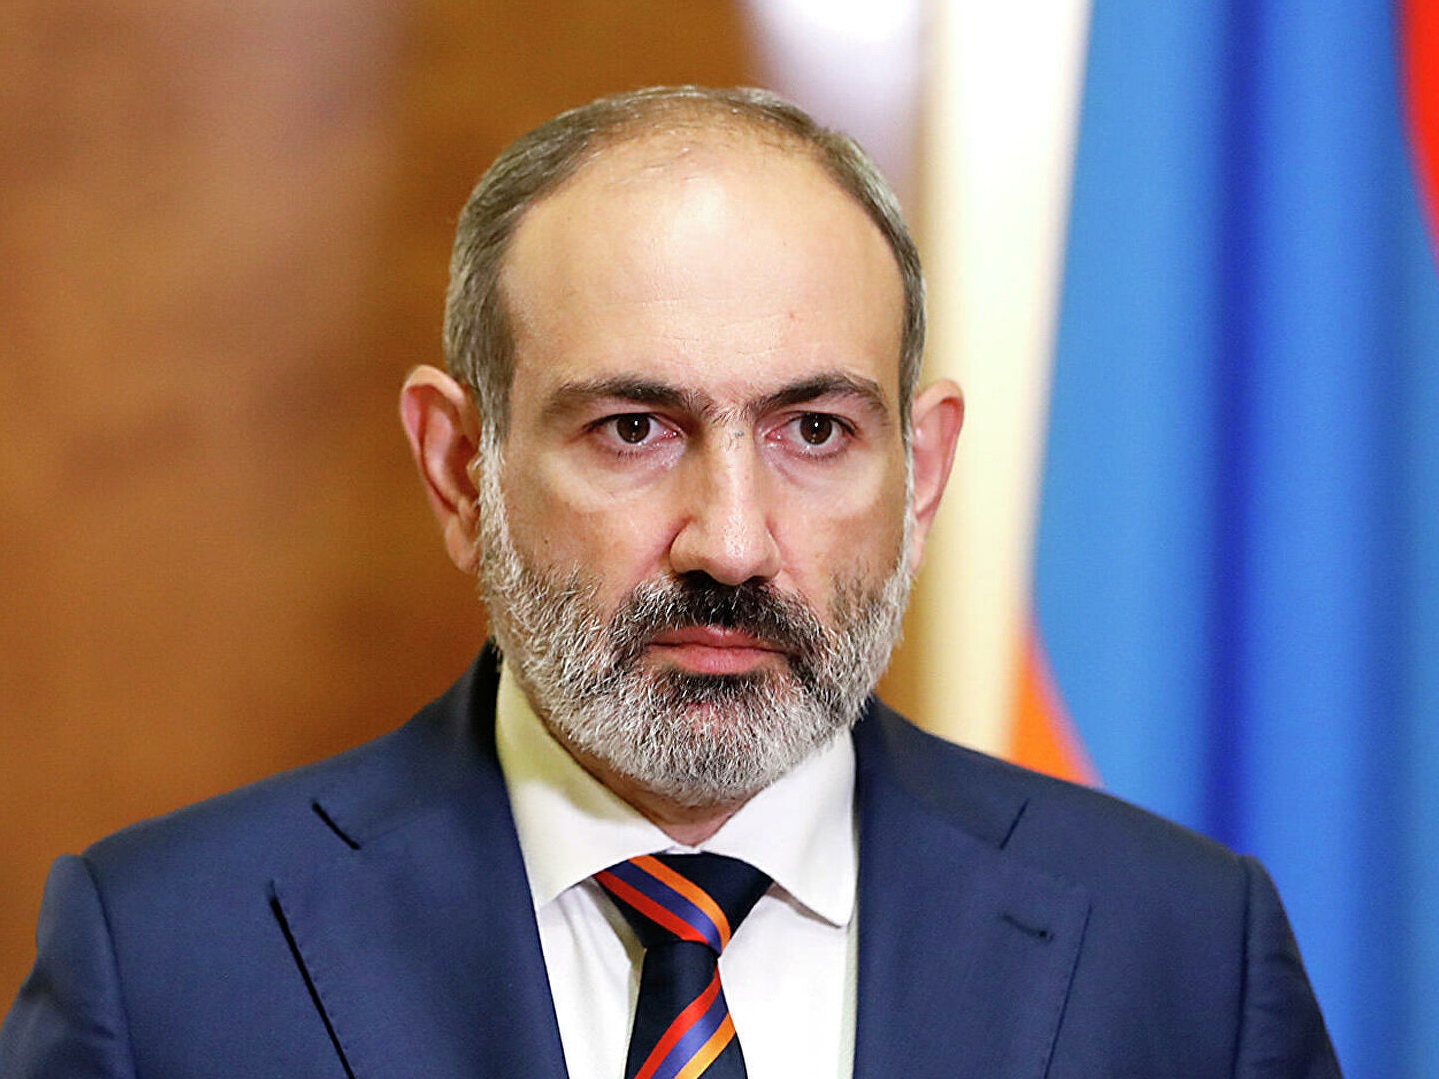 МИД Армении подтвердил: диппаспорт Пашиняна был украден